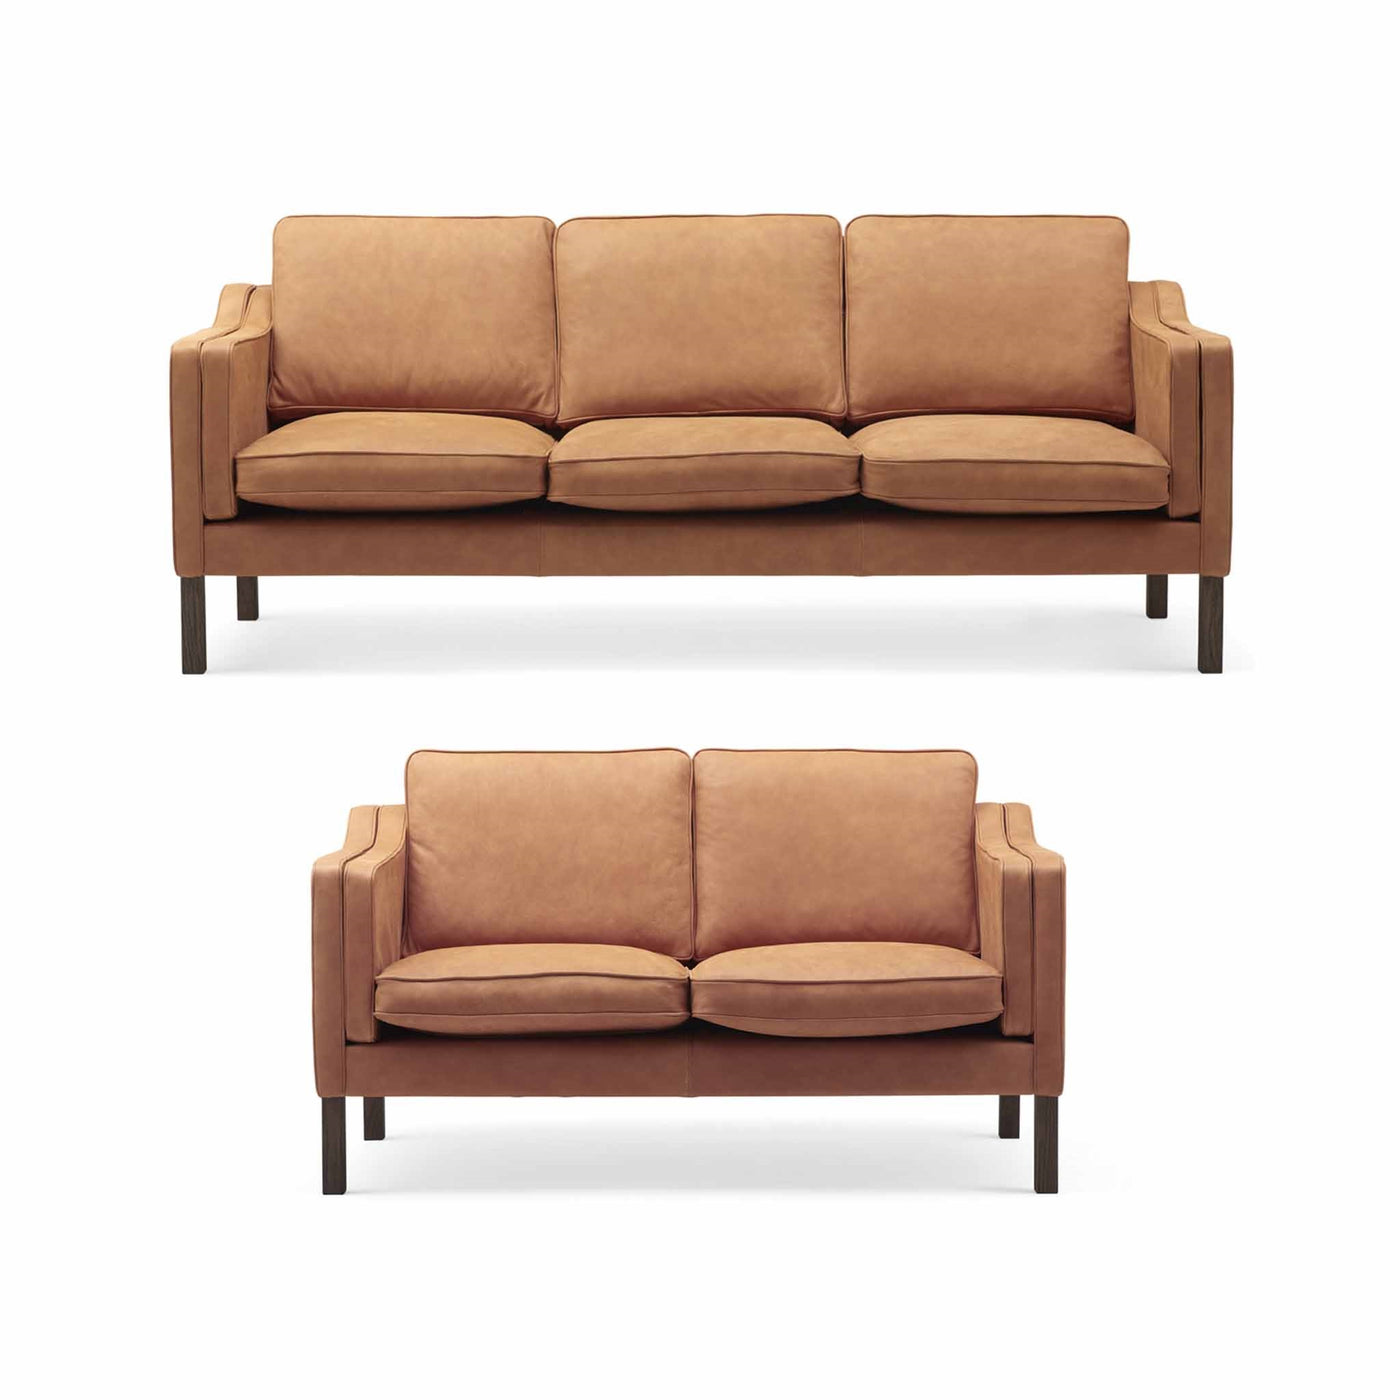 Clausholm sofasæt fra Top-Line monteret med cognacfarvet anilin læder og ben i egetræ